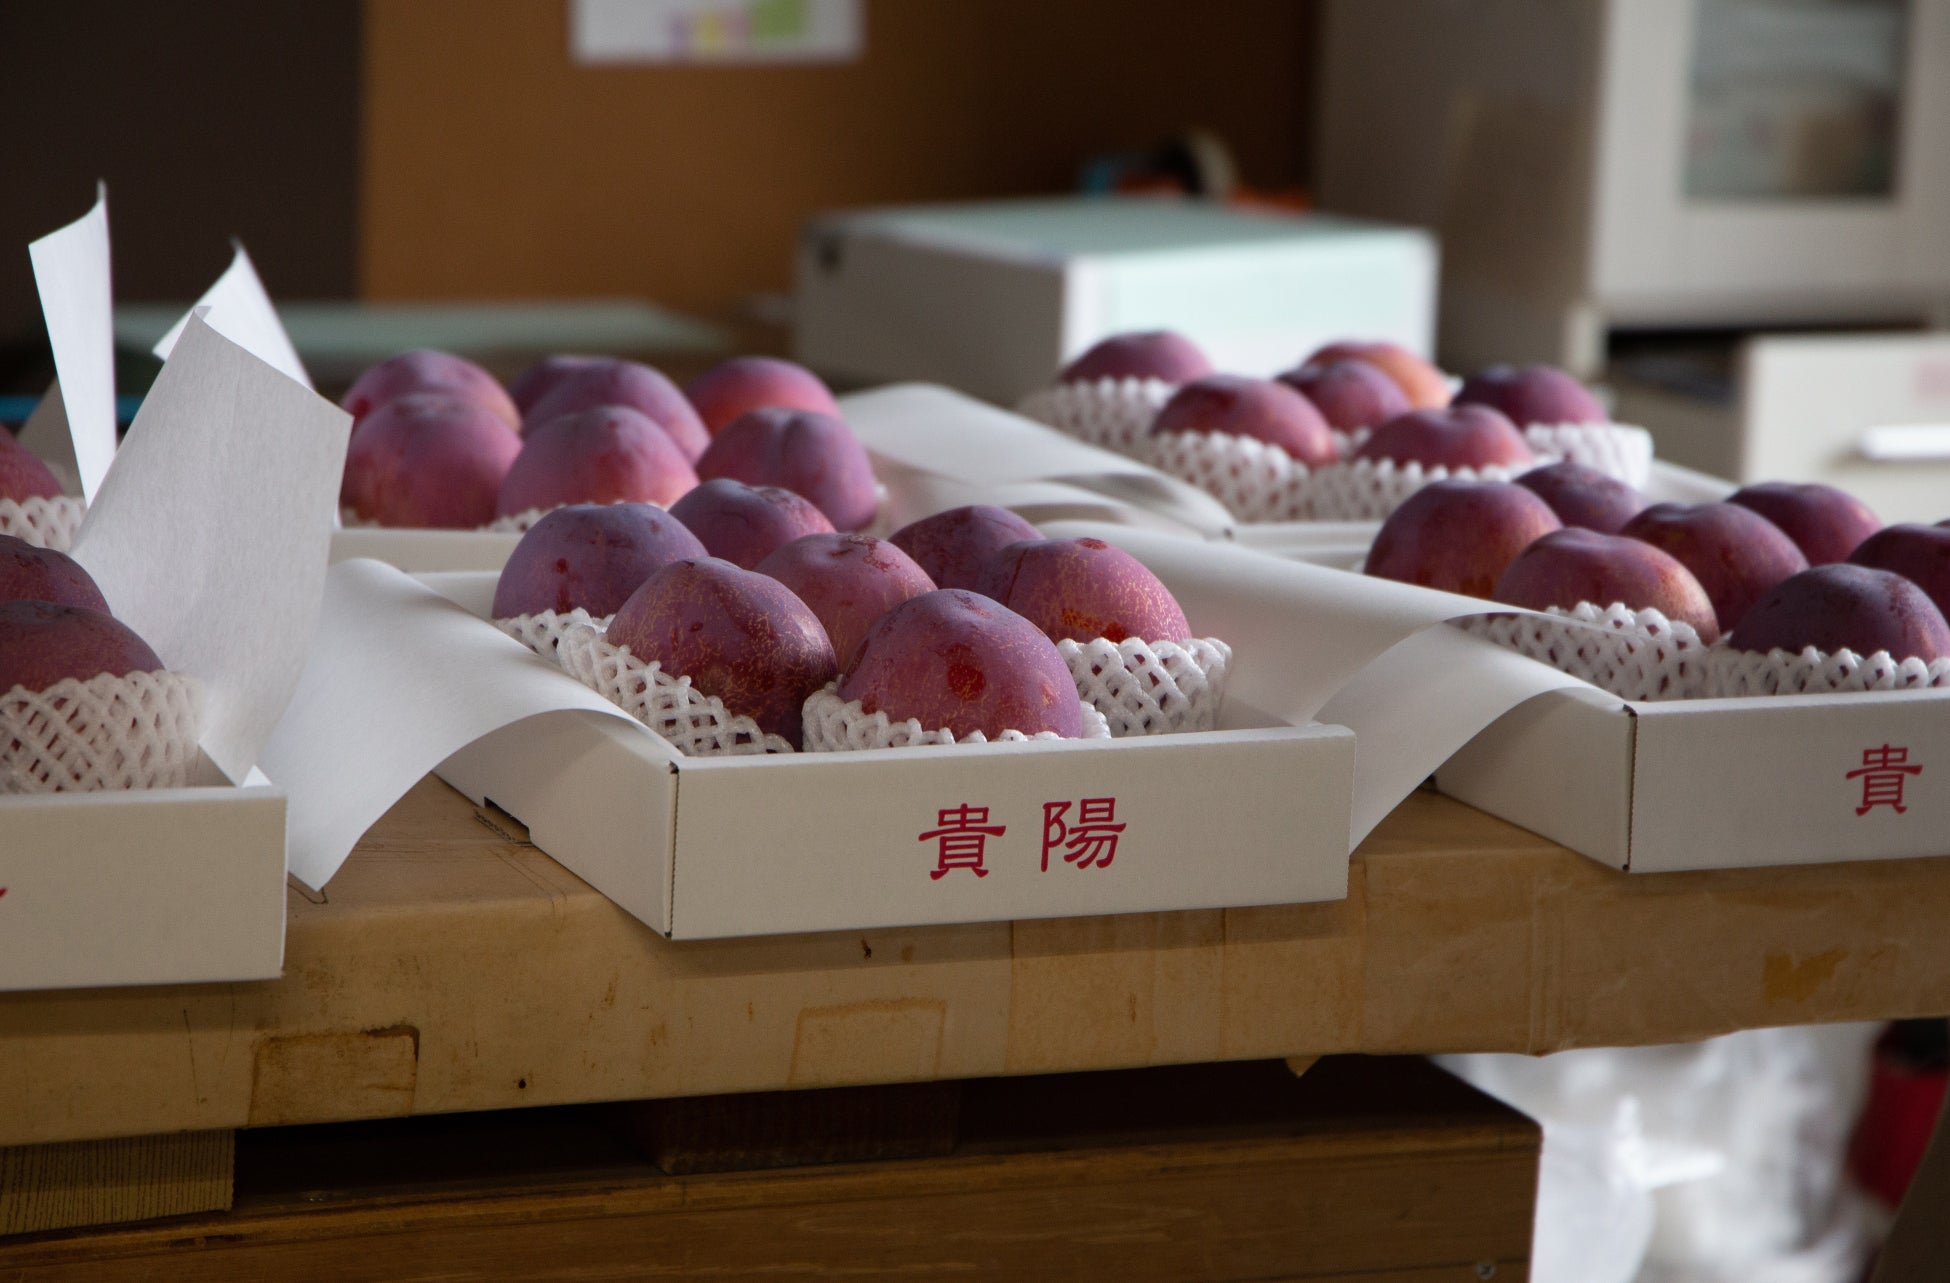 地域の「美味しいのに、知られていない」極完熟の果物を届ける『F STANDプロジェクト』が、山梨県南アルプス市産のシャインマスカットを都内4か所で無人販売のサブ画像4